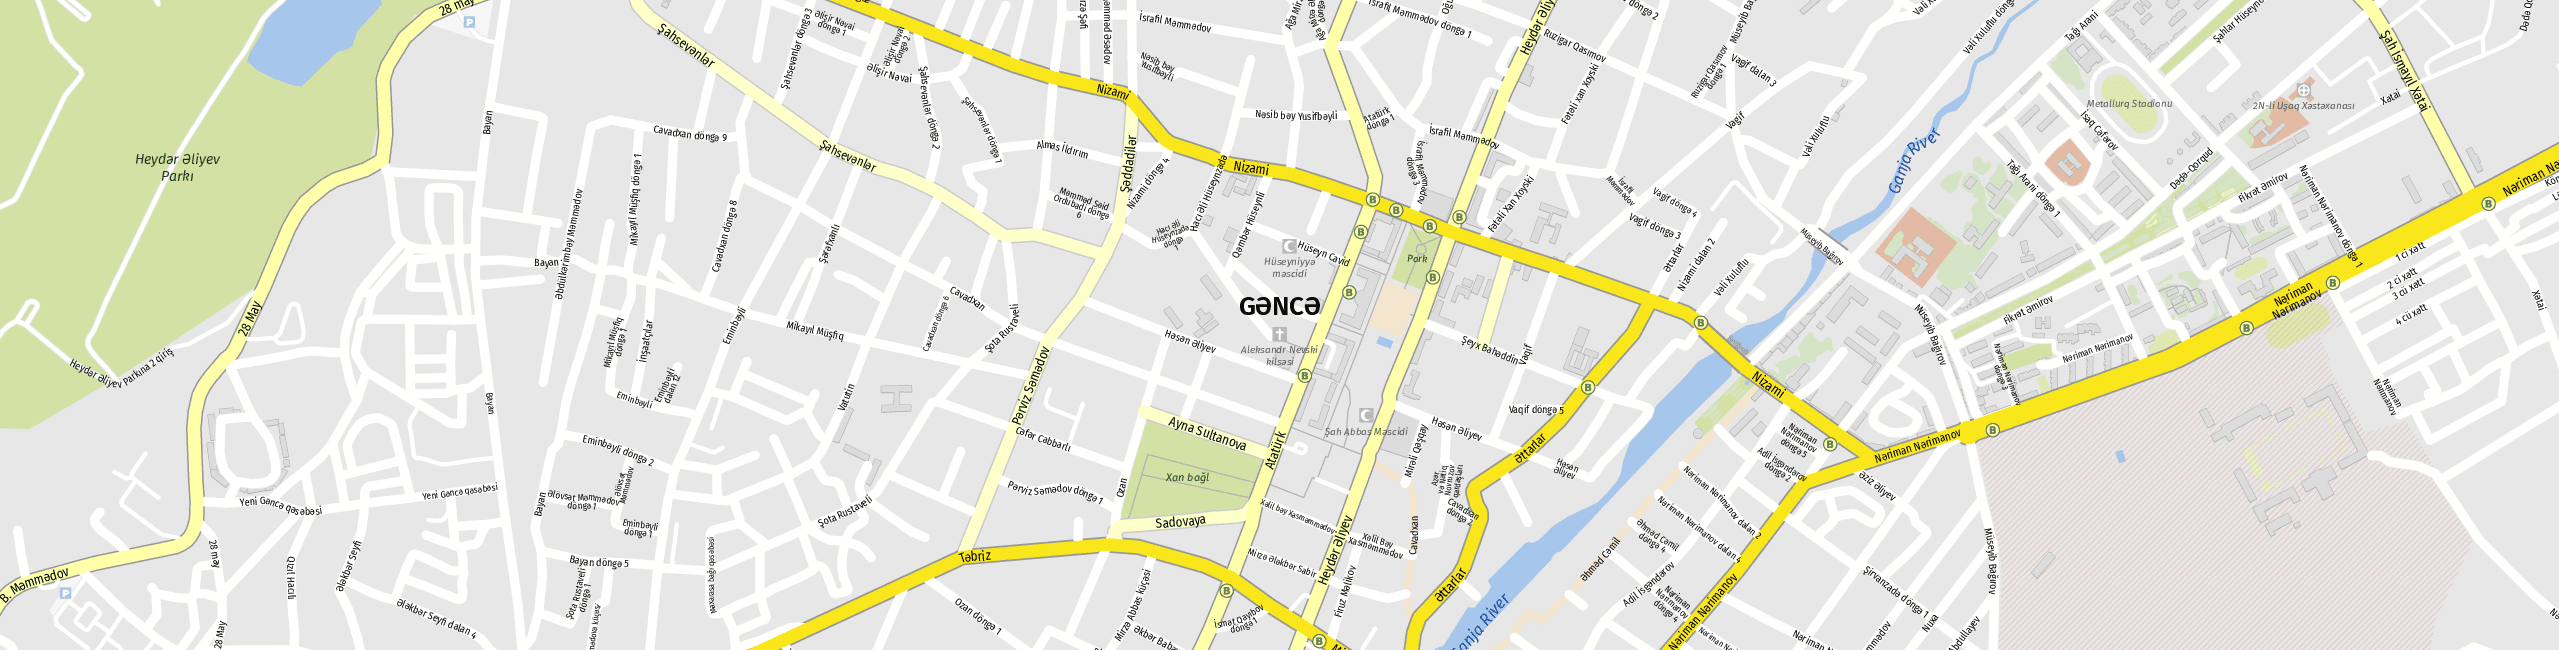 Stadtplan Ganja zum Downloaden.